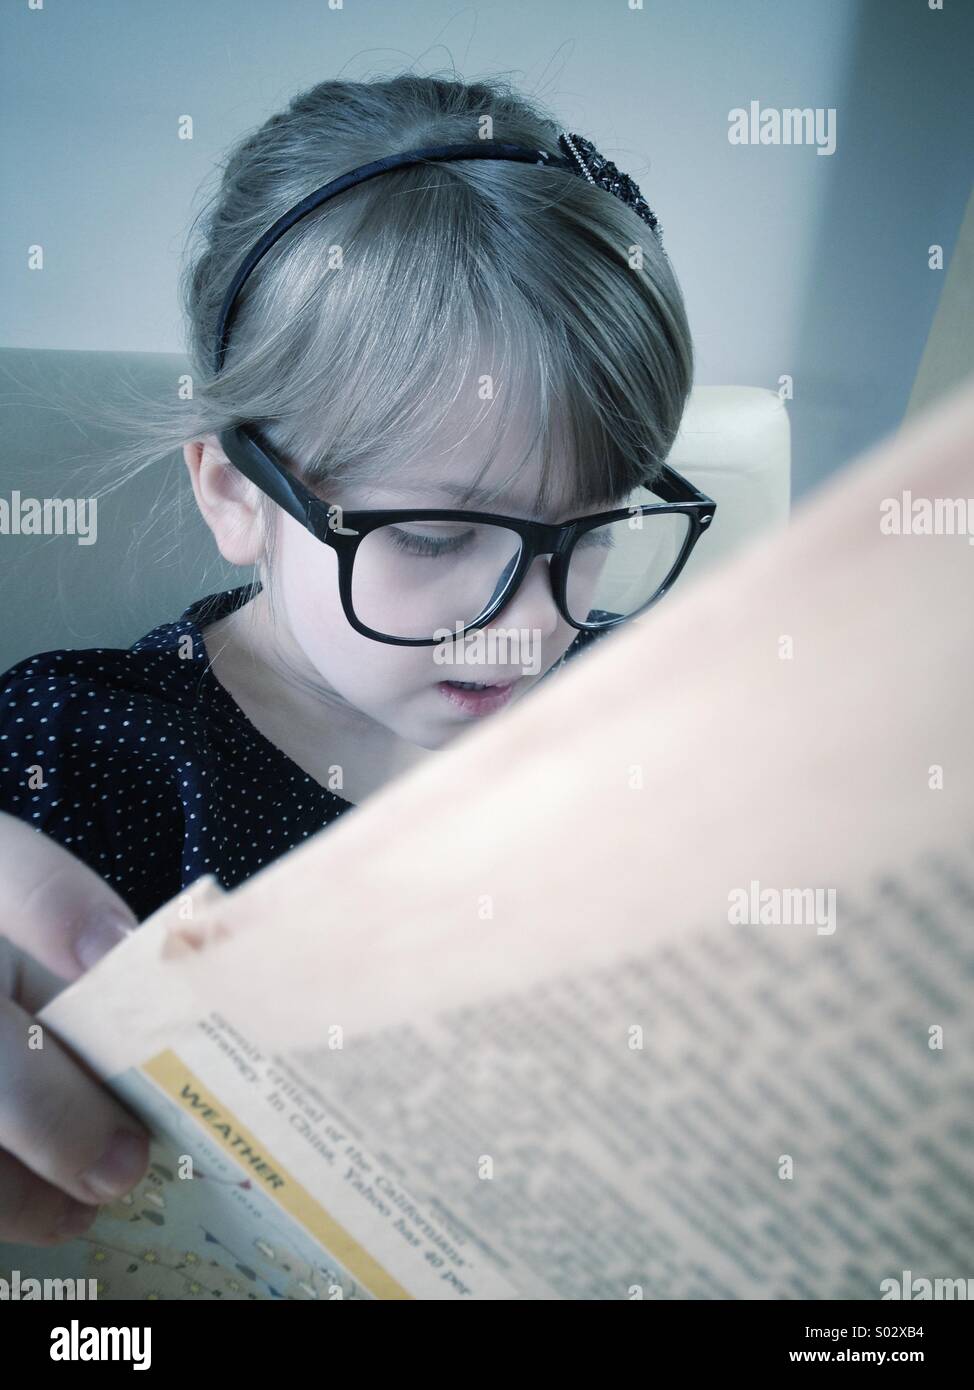 Little girl reading newspaper Stock Photo